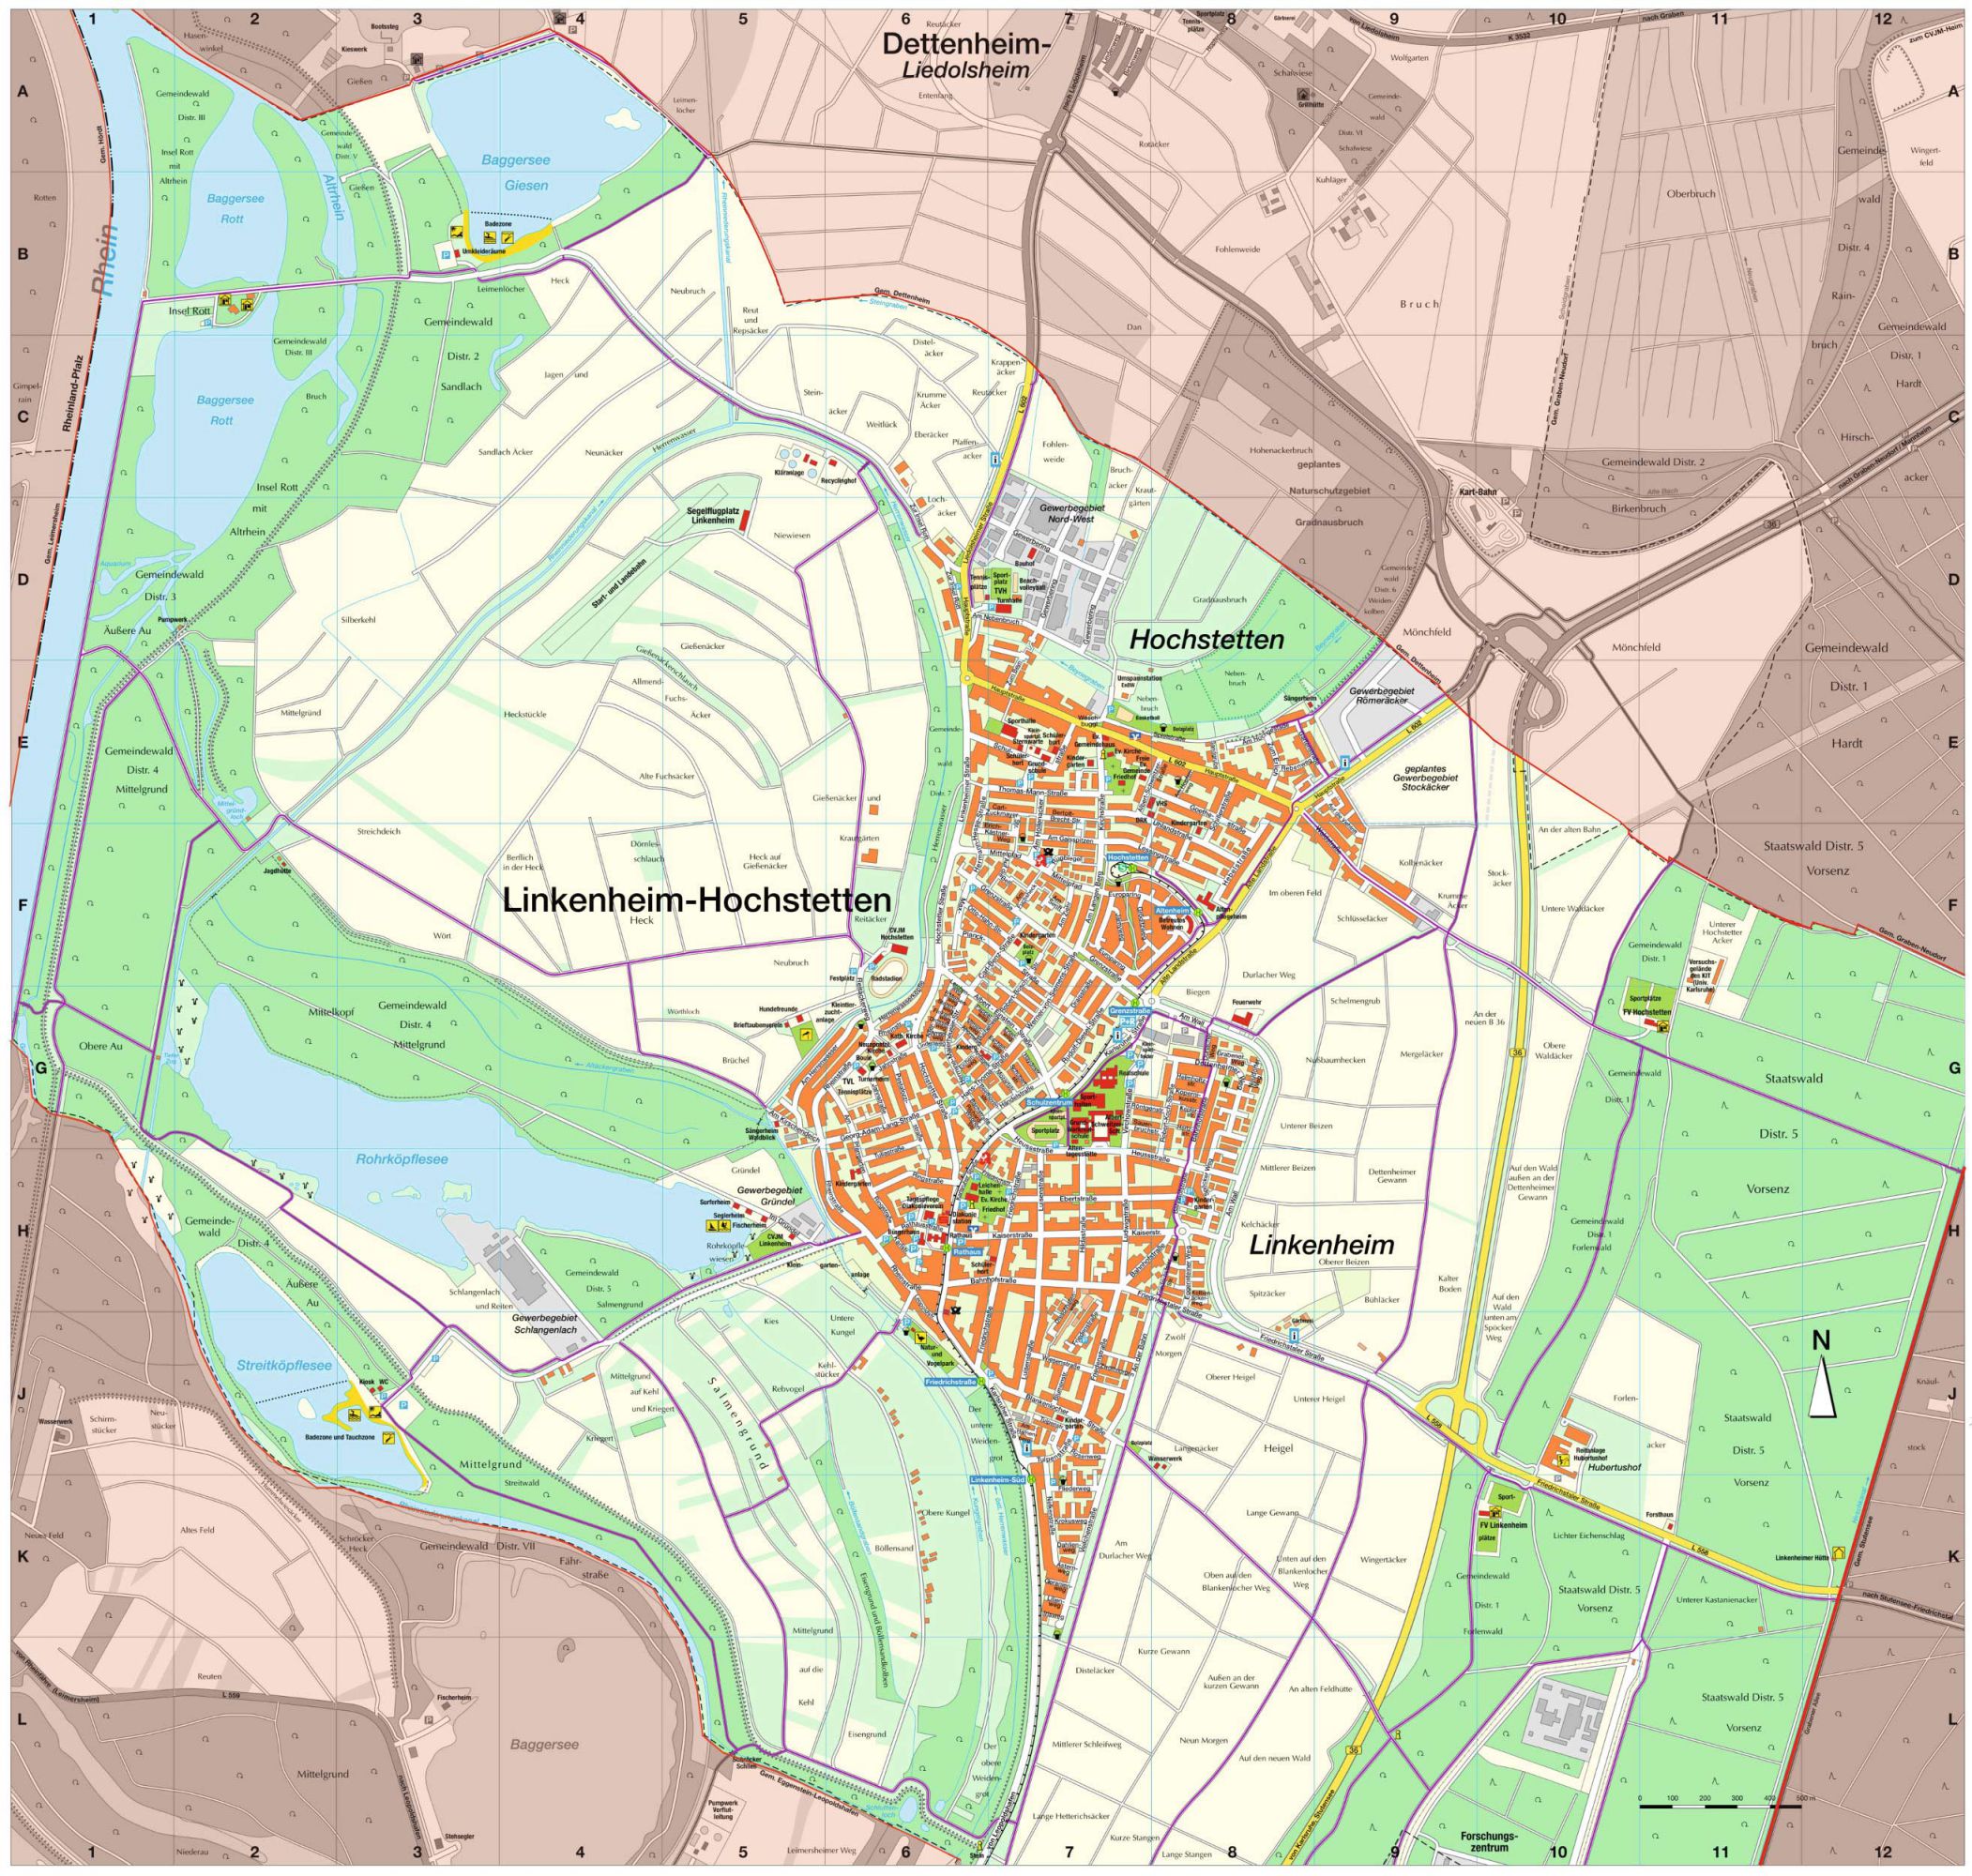 Ortsplan von Linkenheim-Hochstetten mit Germarkungsgrenzen